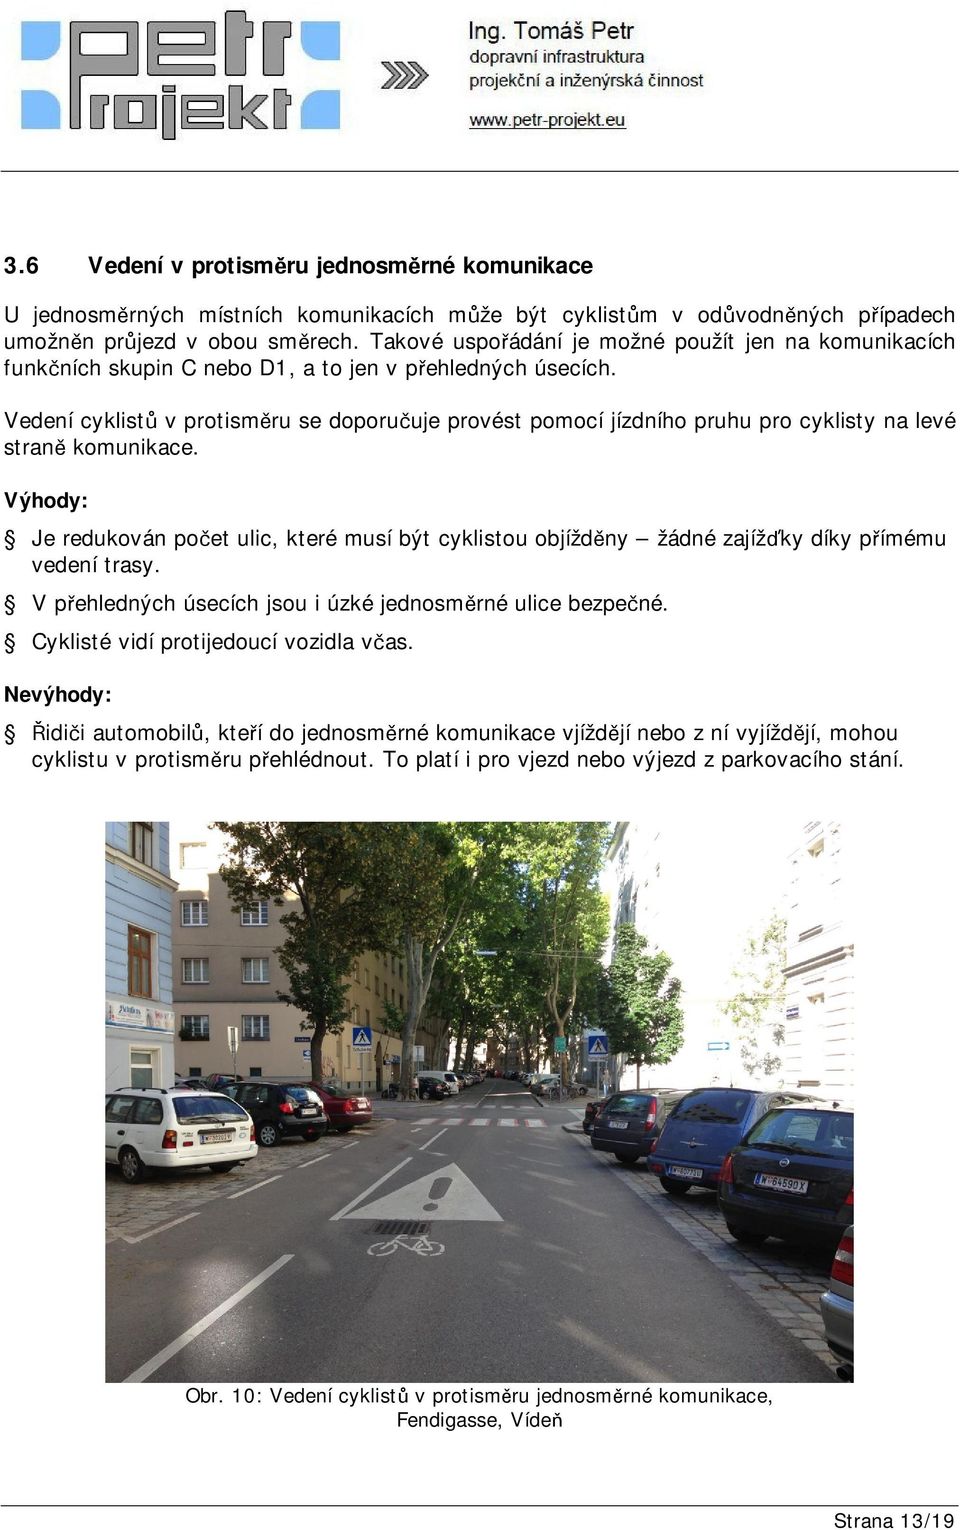 Vedení cyklistů v protisměru se doporučuje provést pomocí jízdního pruhu pro cyklisty na levé straně komunikace.